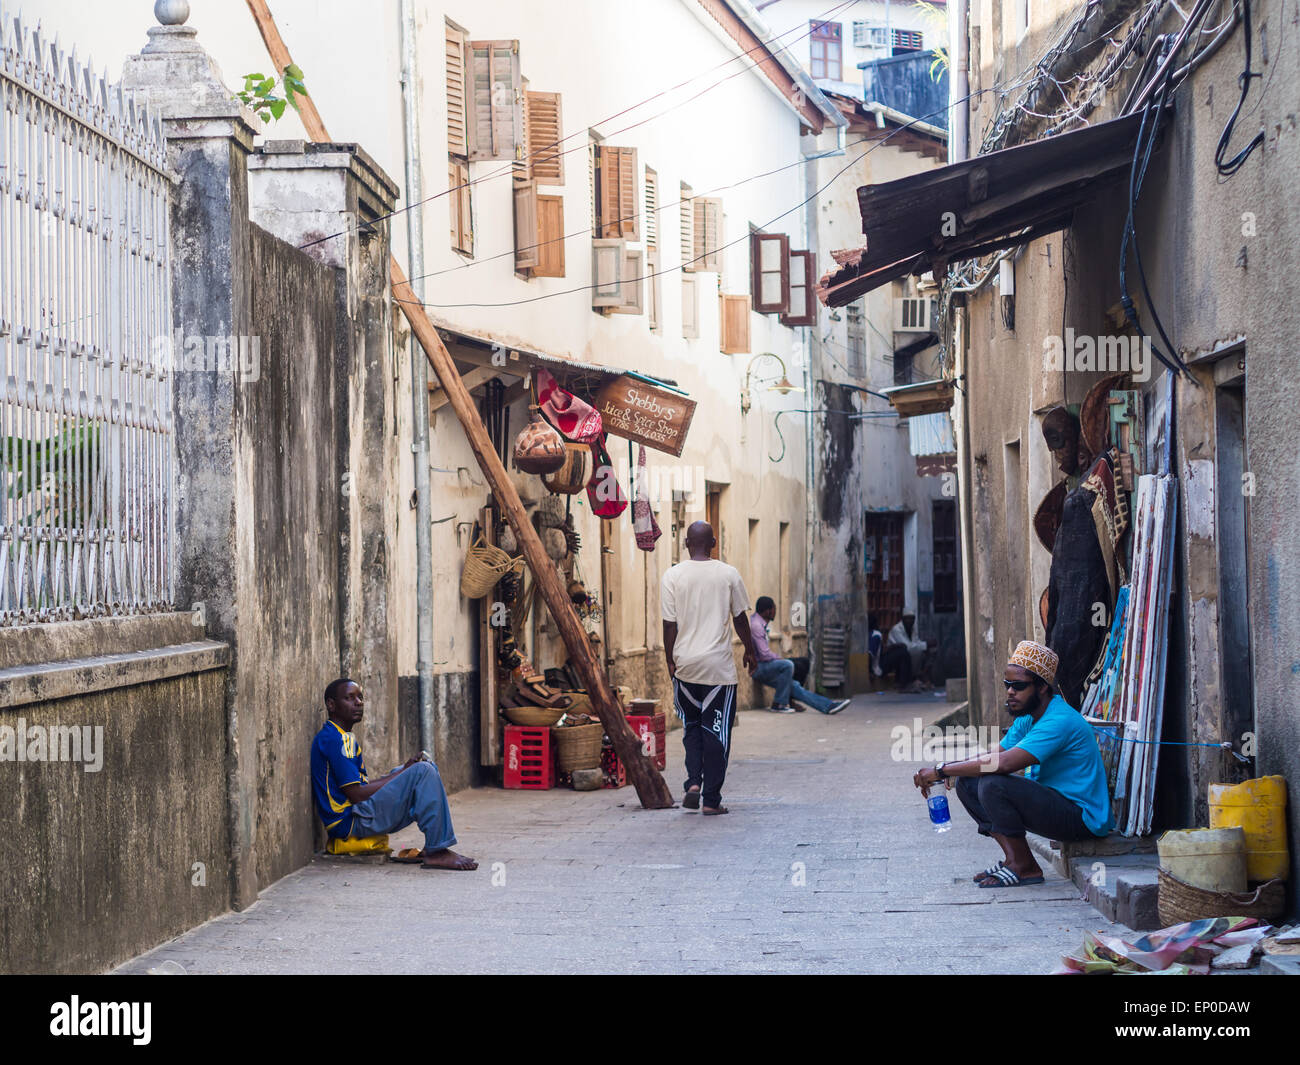 Menschen vor Ort zu Fuß auf einer der engen Gassen in der Altstadt von Stone Town, Sansibar in Ostafrika. Horizontale Ausrichtung Stockfoto